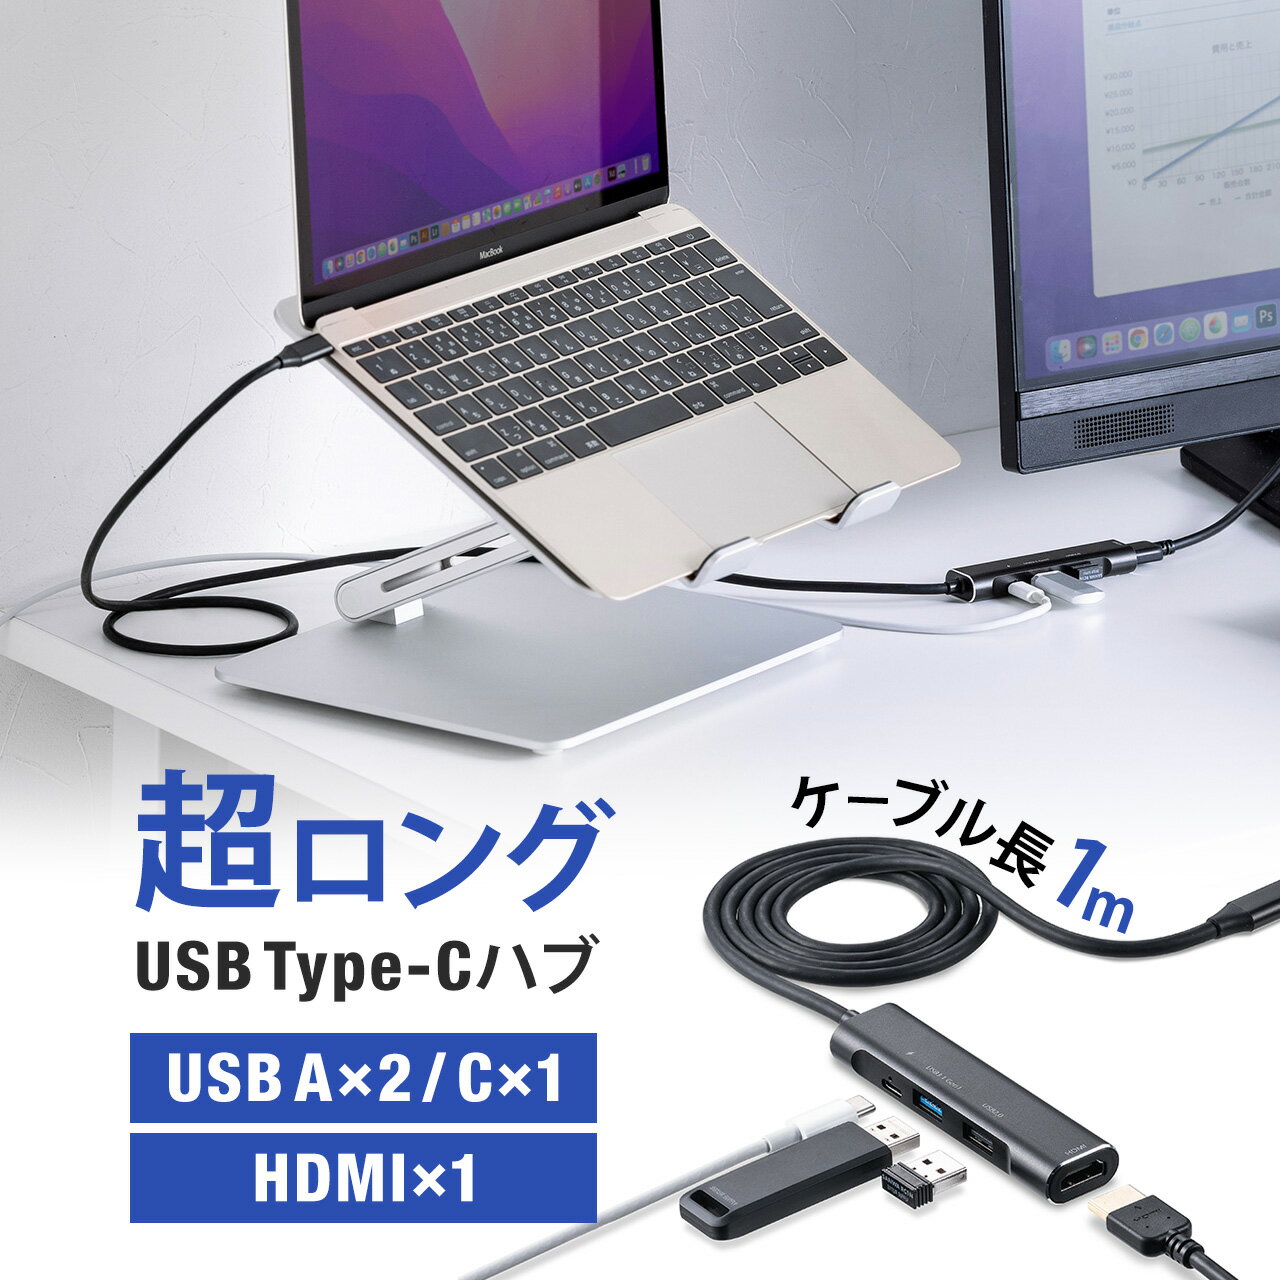 USB Type-C hbLOXe[V USBnu oC^Cv PD 60W 4K 4in1 HDMI USB3.2 USB2.0 P[u1m TTvC